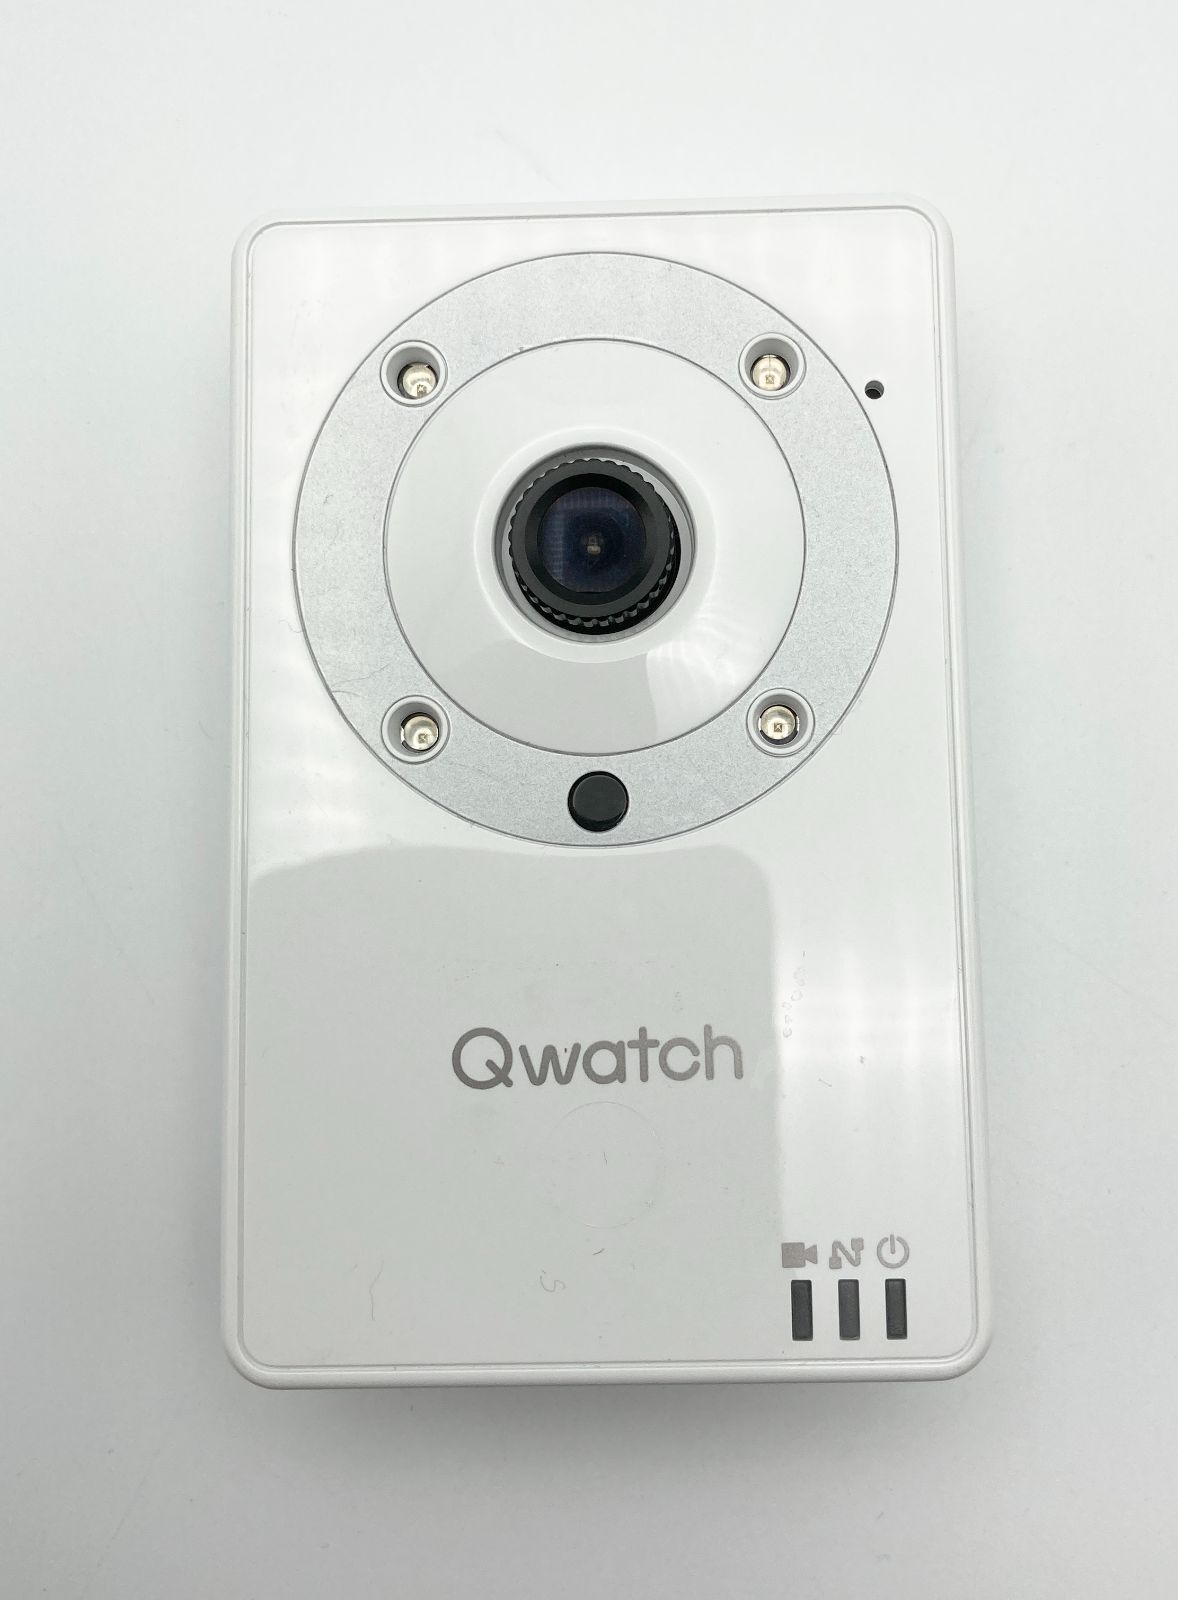 【返品無料】新品・ストア★ネットワークカメラ IODATA Qwatch TS-WRFE 防犯カメラ